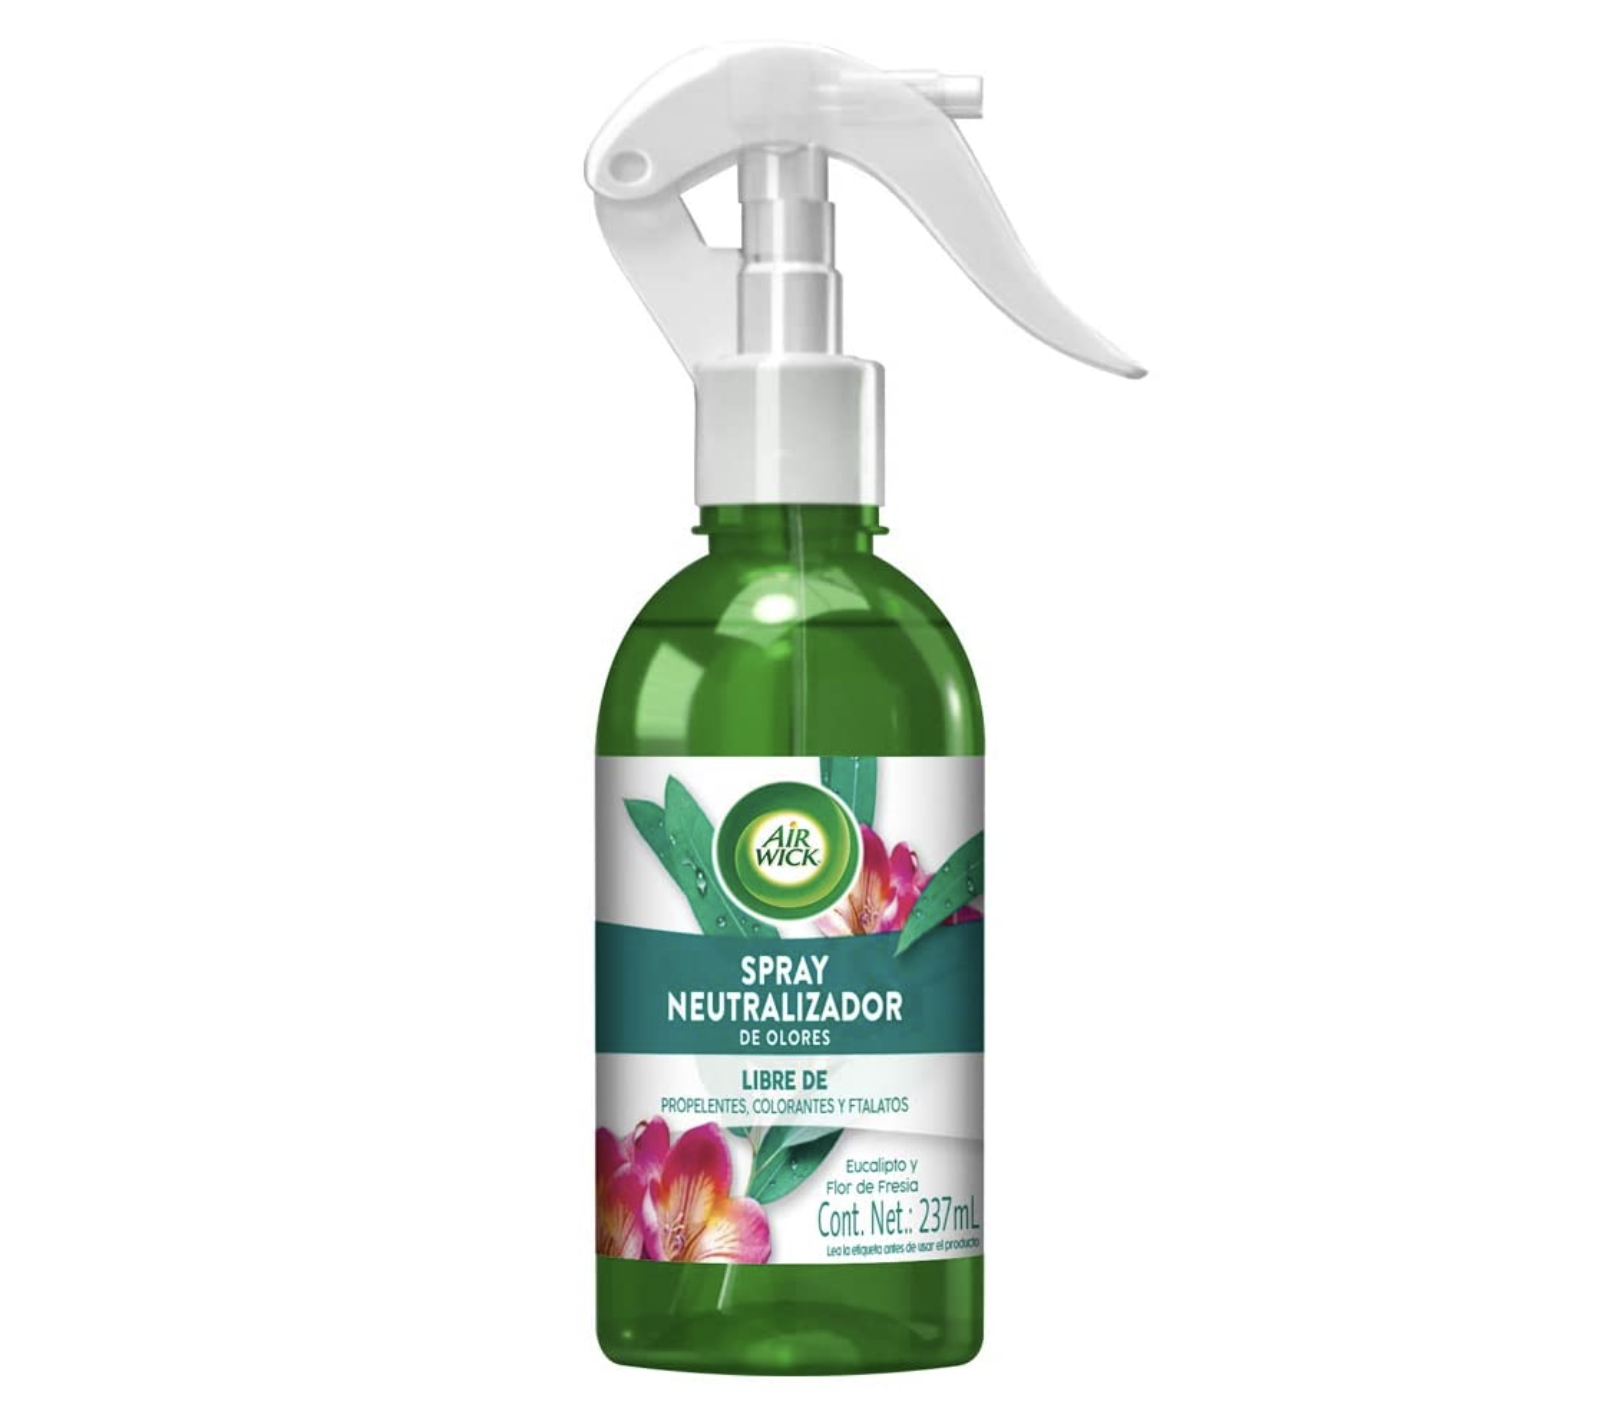 Spray neutralizador de olores, aroma eucalipto y flor de Fresia